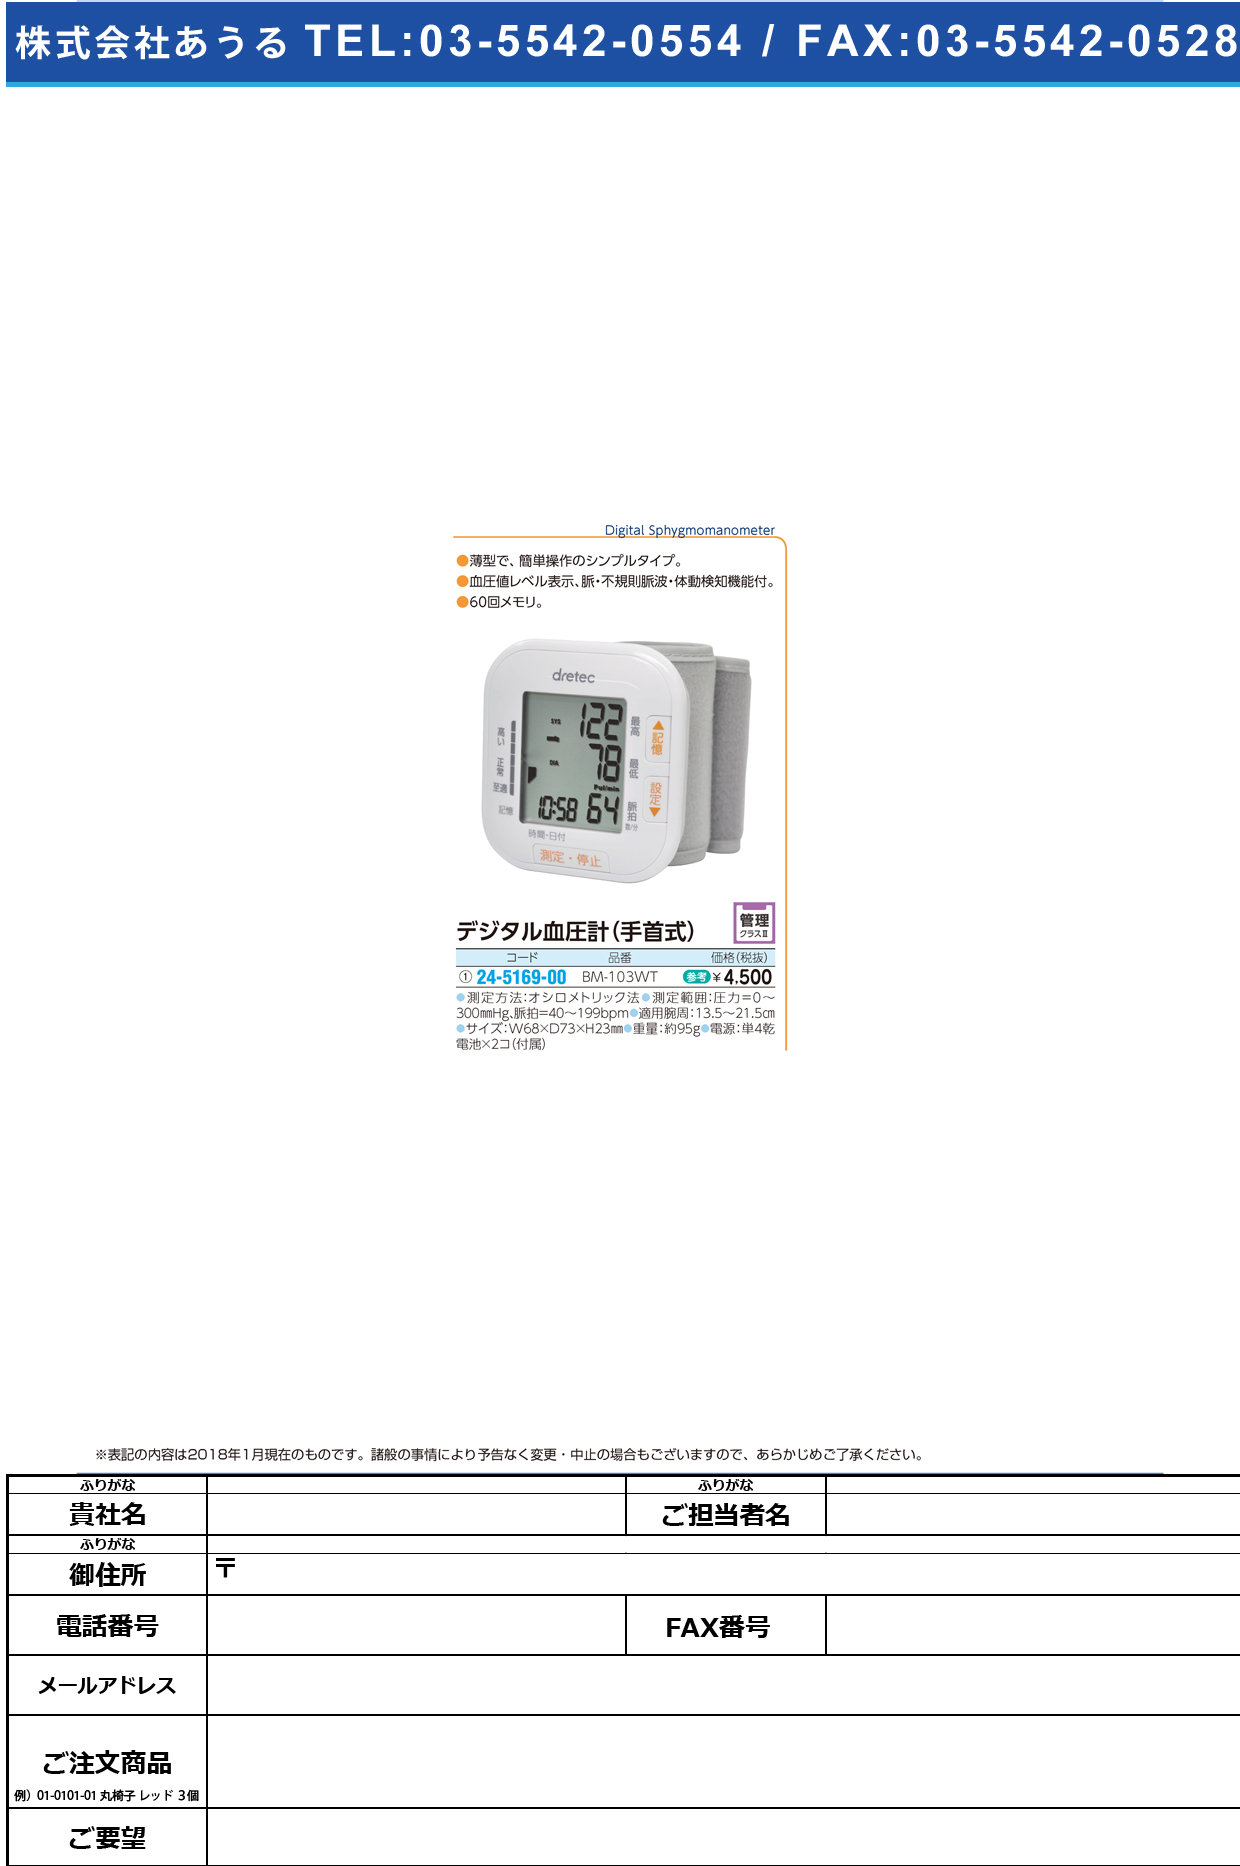 (24-5169-00)手首式血圧計 BM-103WT(ﾎﾜｲﾄ) ﾃｸﾋﾞｼｷｹﾂｱﾂｹｲ(ドリテック)【1台単位】【2019年カタログ商品】